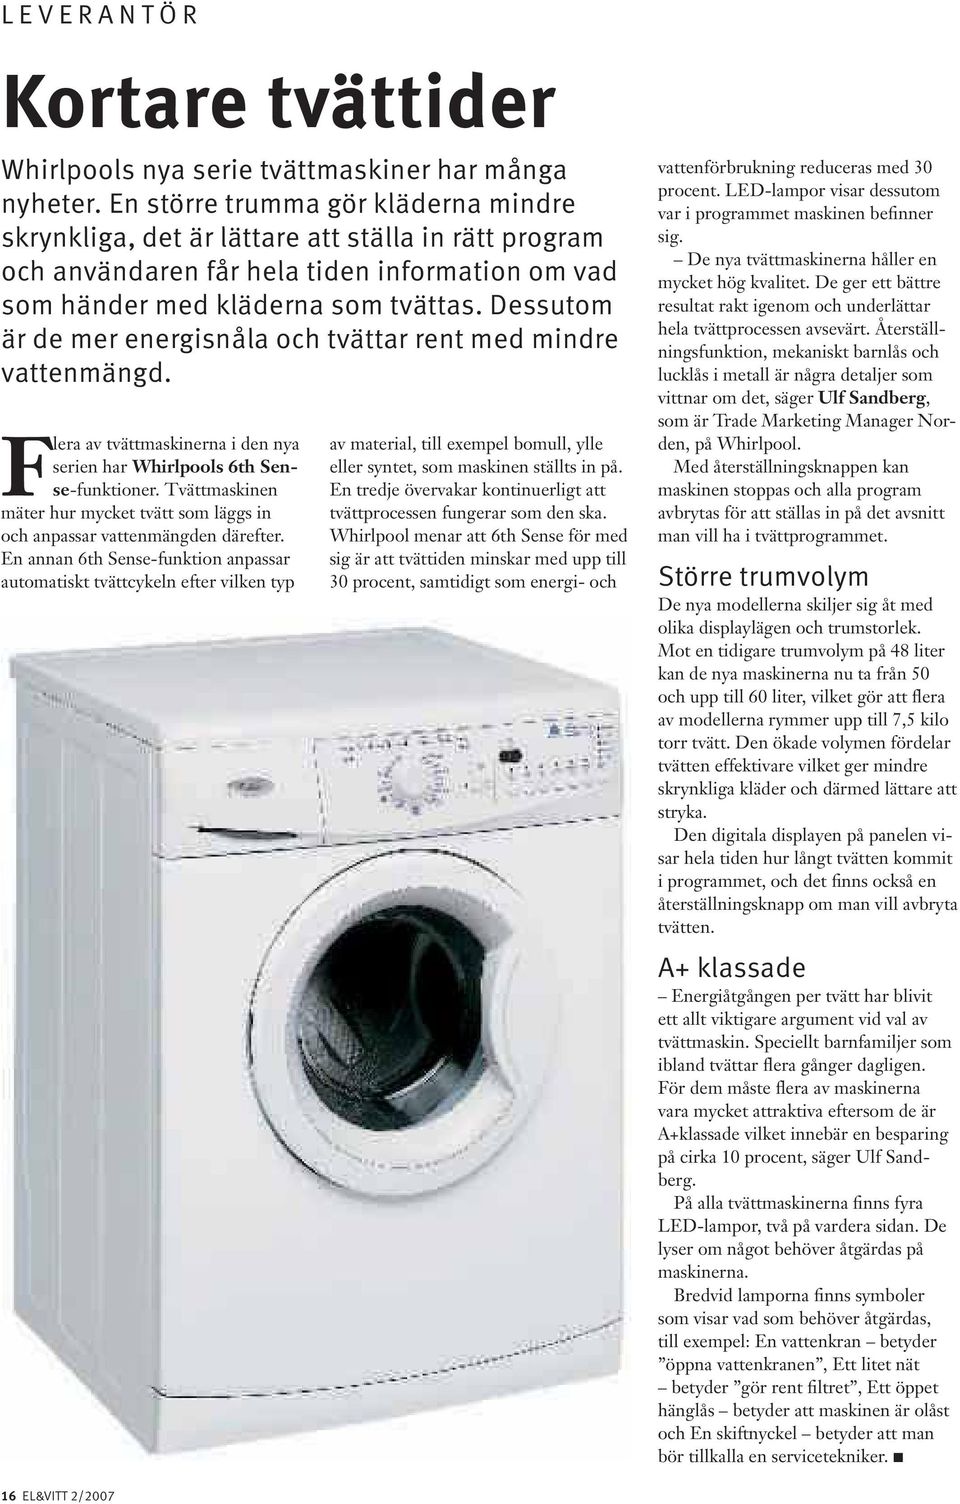 Dessutom är de mer energisnåla och tvättar rent med mindre vattenmängd. Flera av tvättmaskinerna i den nya serien har Whirlpools 6th Sense-funktioner.